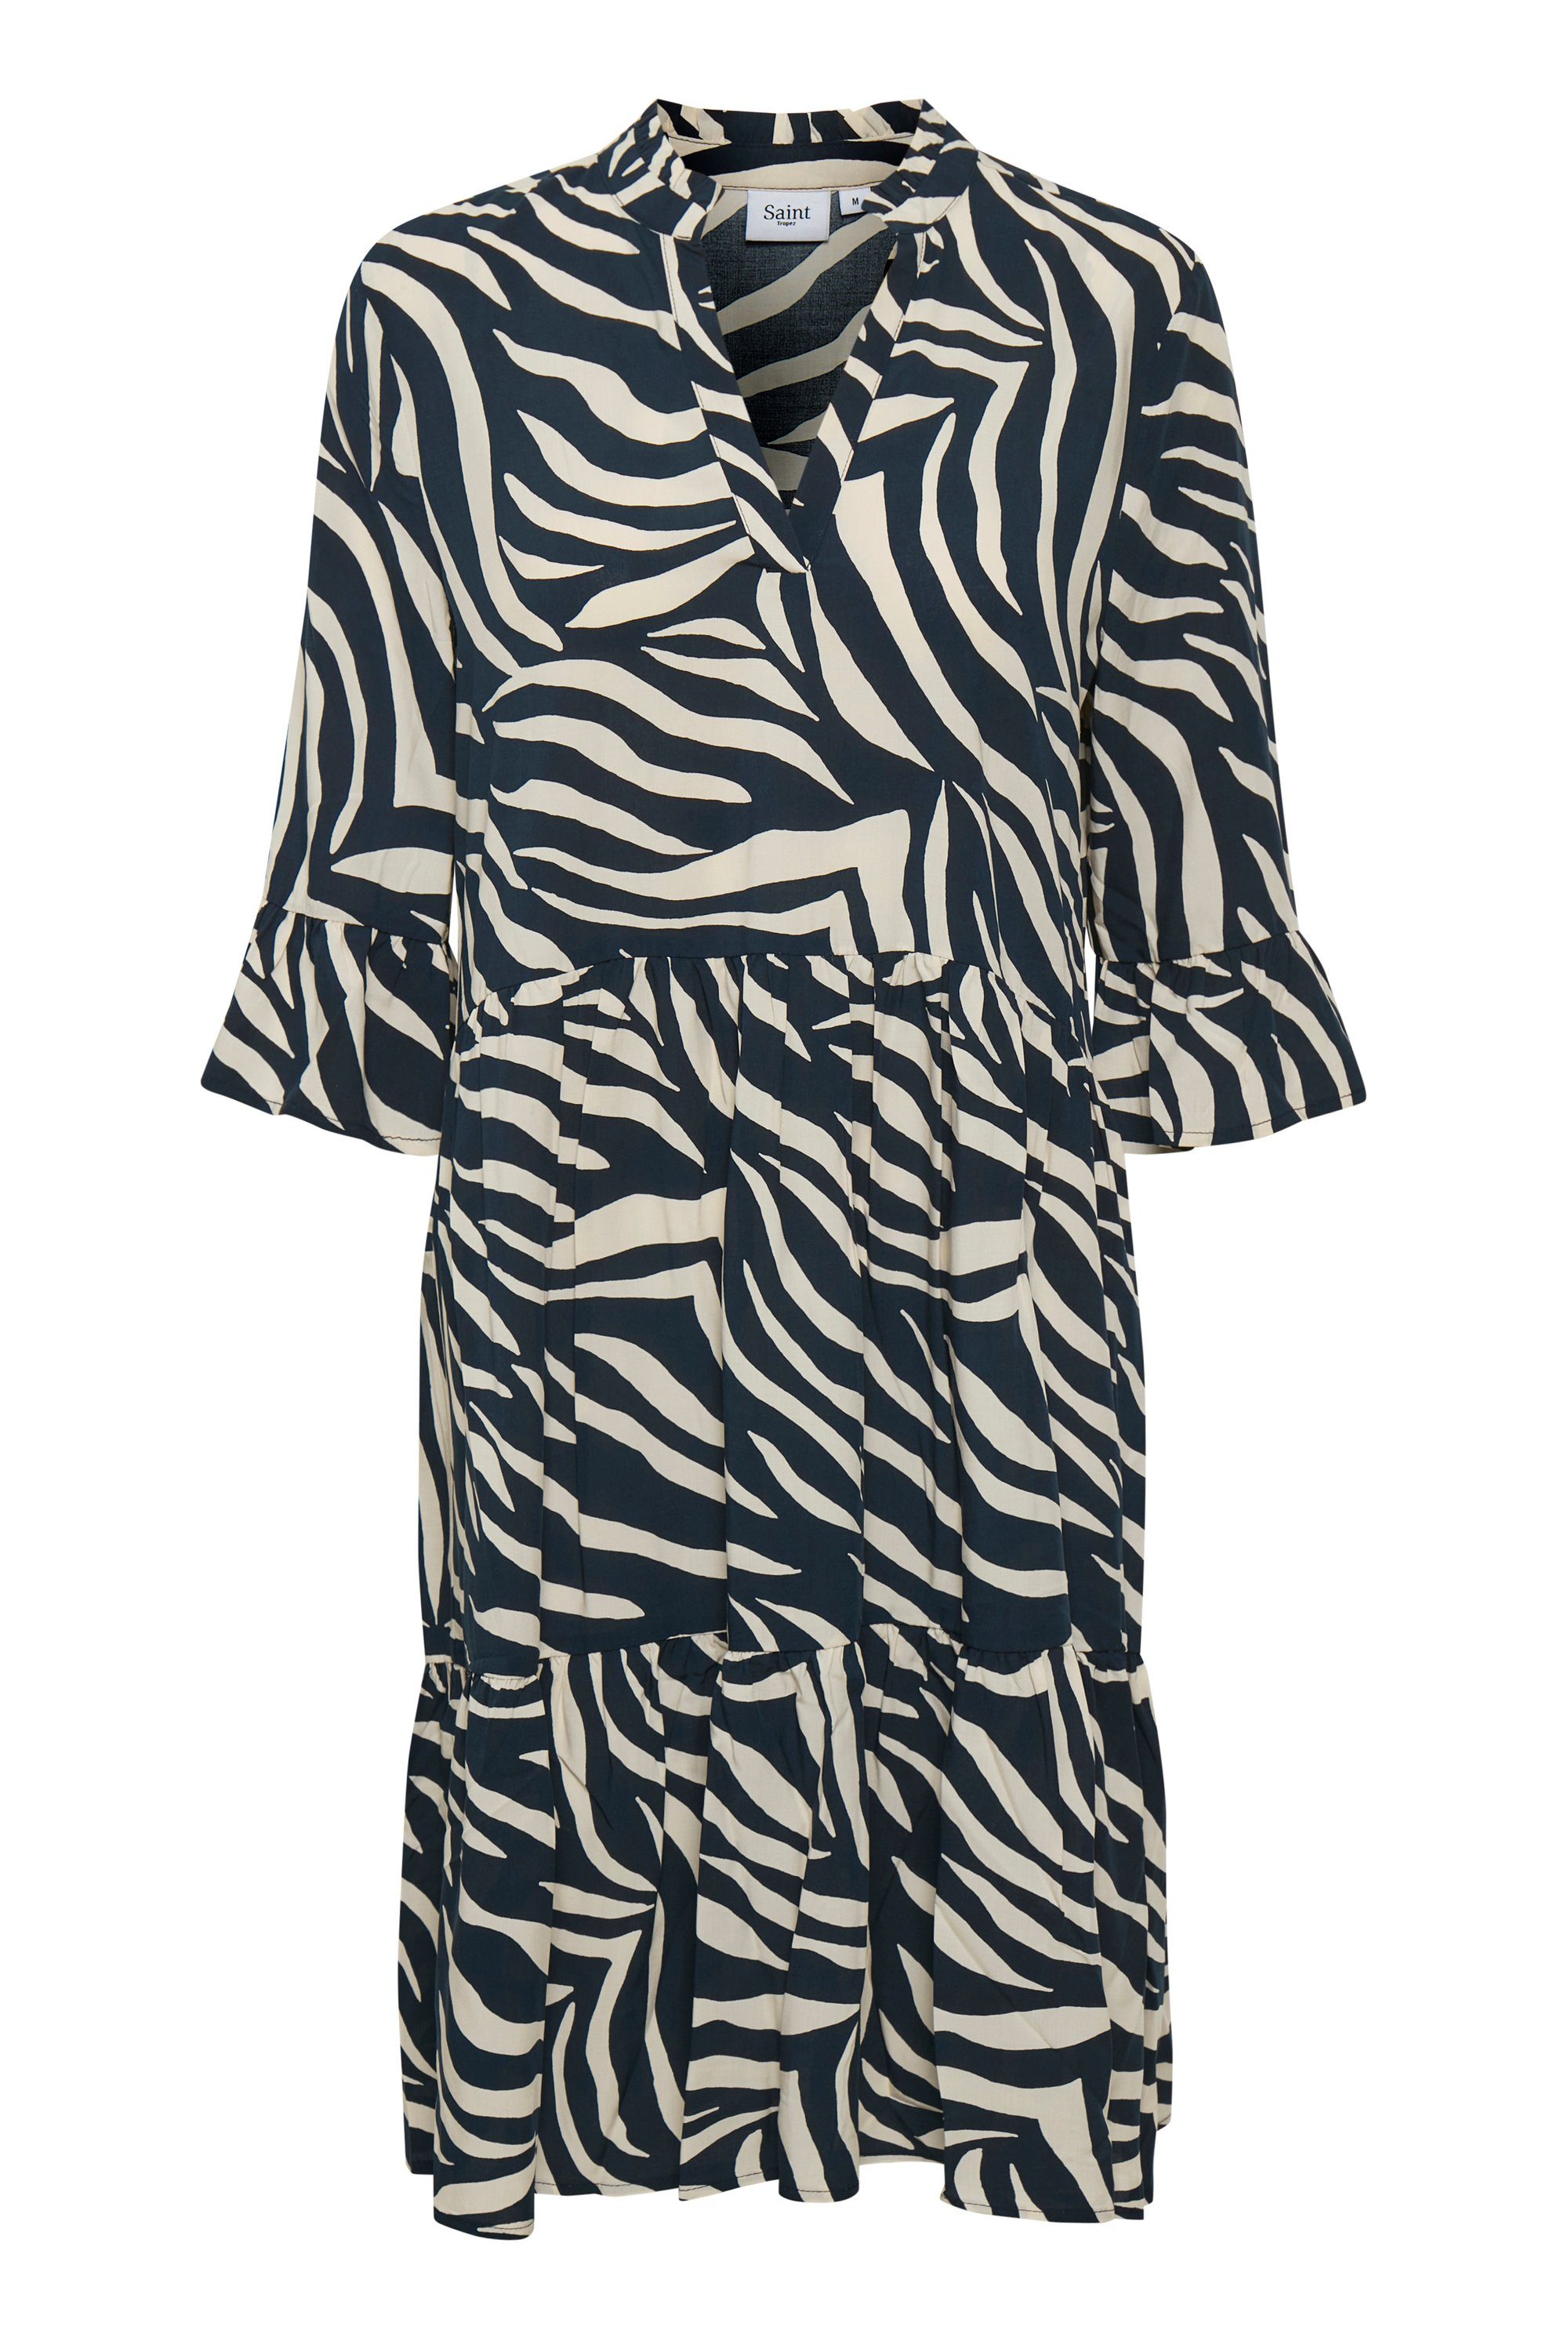 Saint Tropez Jerseykleid EdaSZ Dress Total Eclipse Zebra Skin | Jerseykleider